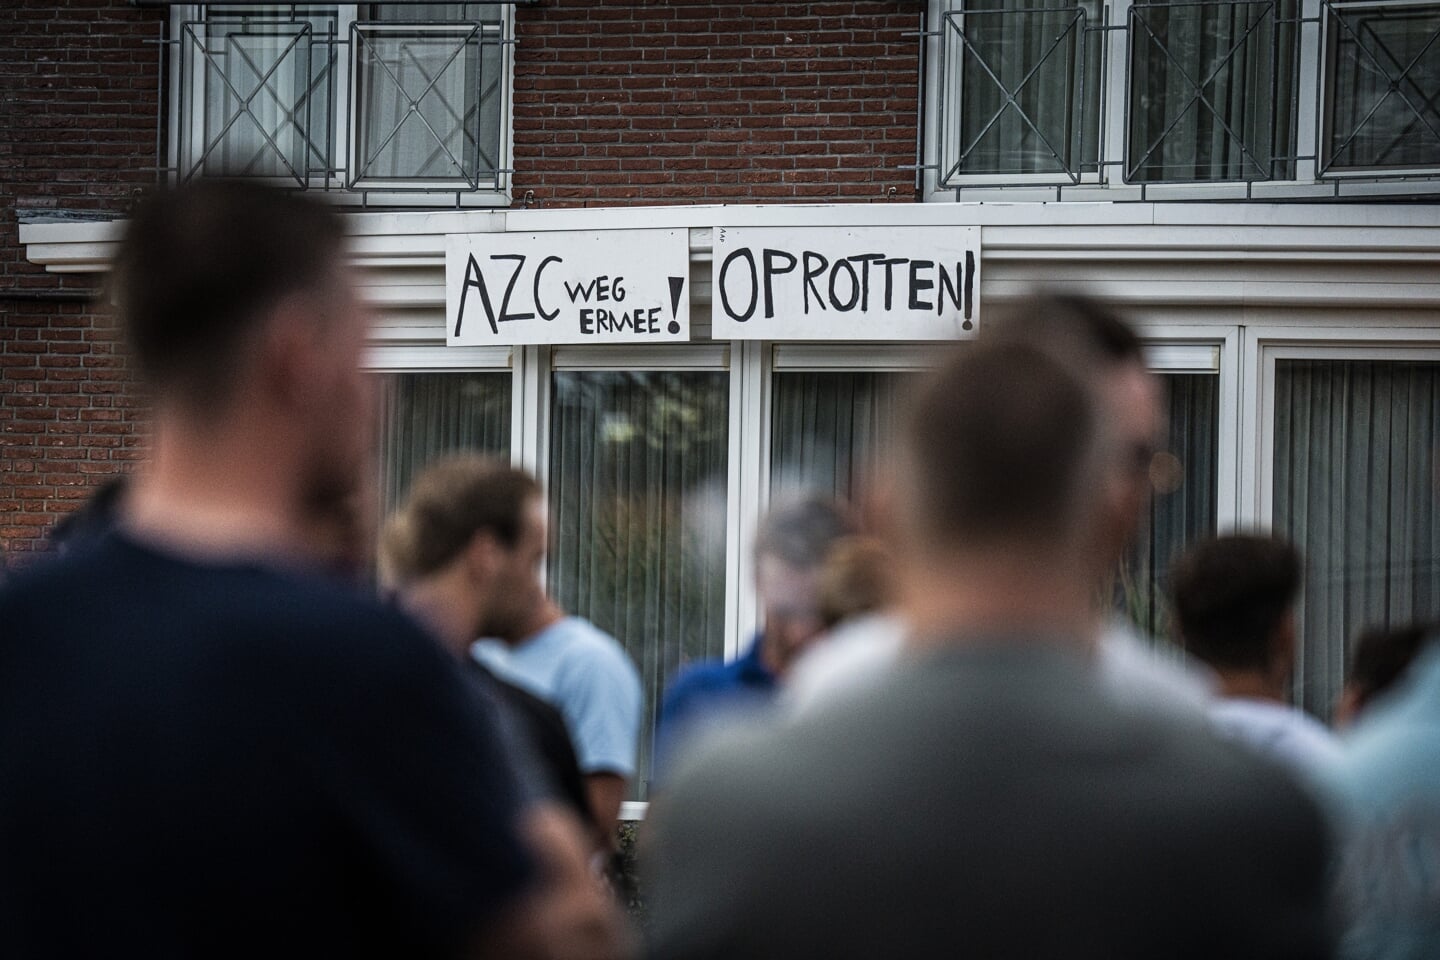 Protest bij Landhotel ’t Elshuys in Albergen. Het kabinet heeft een vergunning afgegeven voor opvang van asielzoekers op deze locatie. Door het Centraal Orgaan opvang asielzoekers (COA) toestemming te geven om er asielzoekers op te vangen, is de gemeente gepasseerd. 